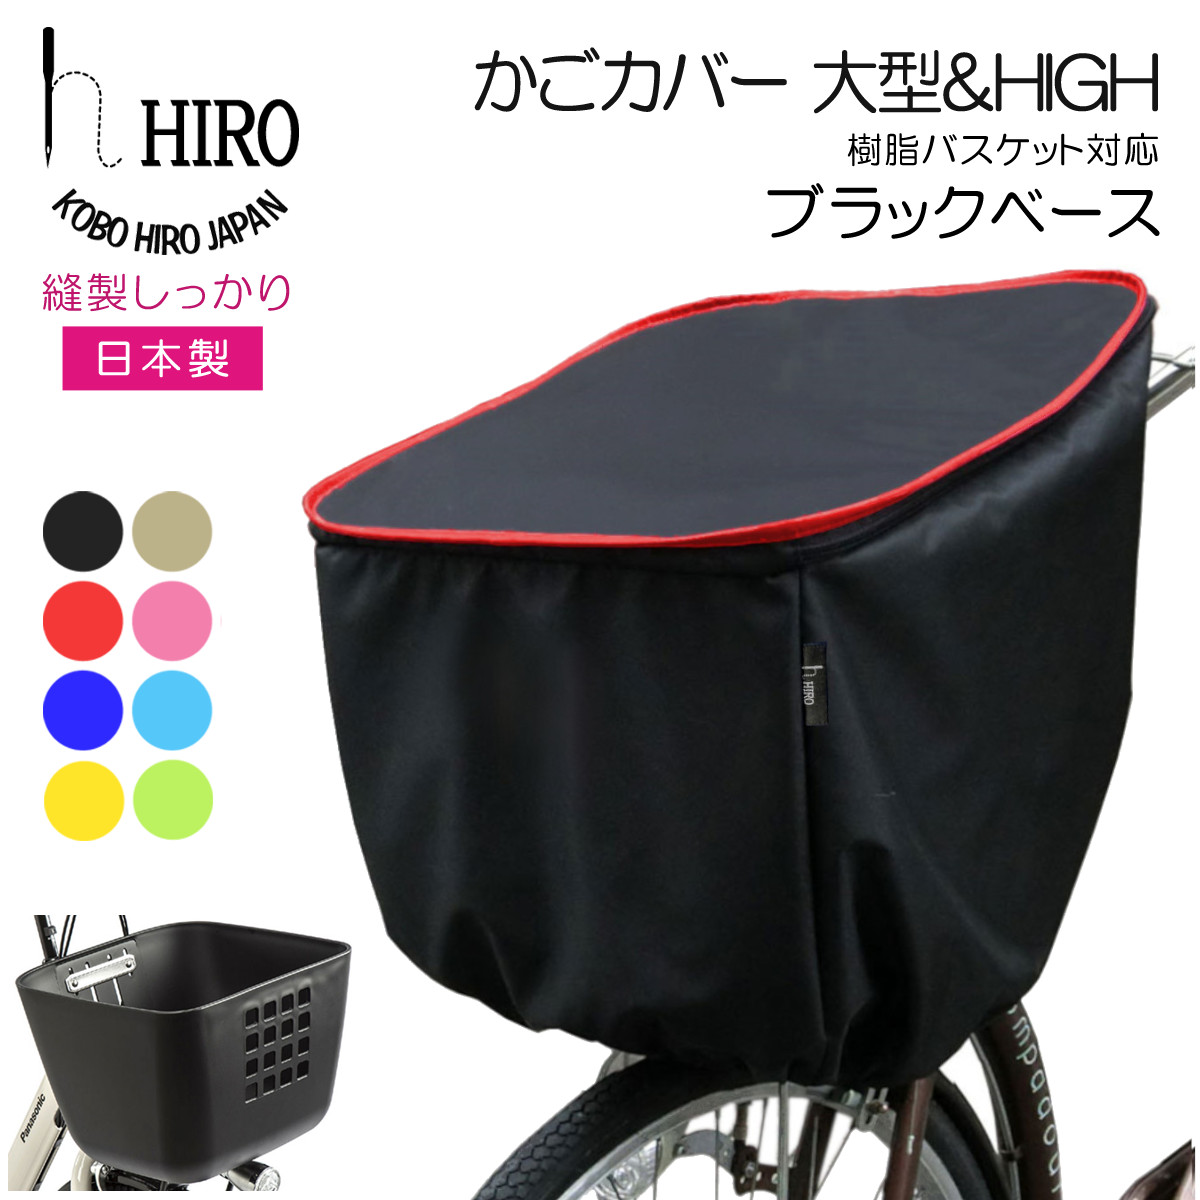 自転車 前かごカバー 大型 ＆ HIGH 日本製 HIRO (ヒロ) 樹脂製